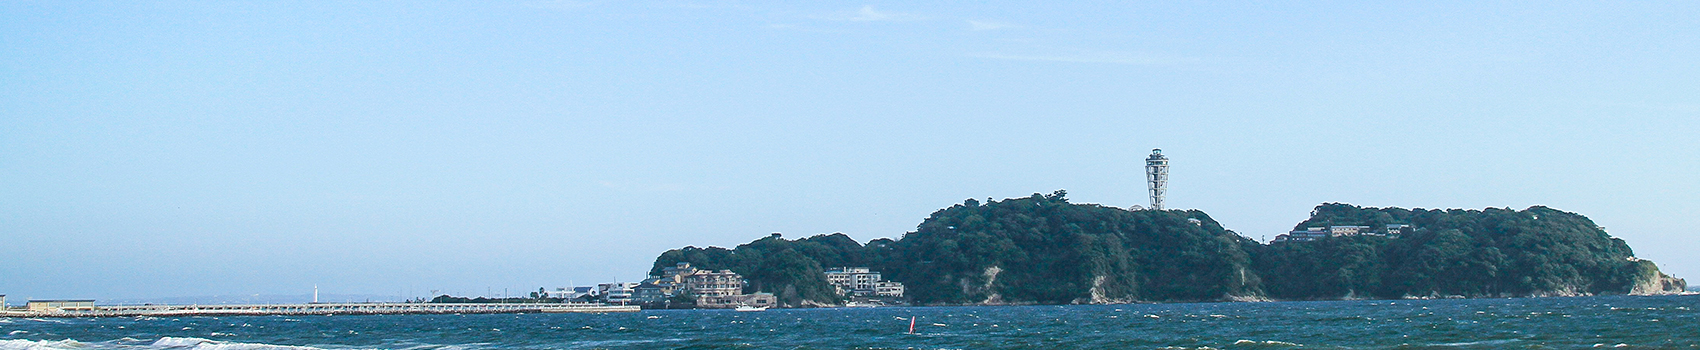 江の島イメージ